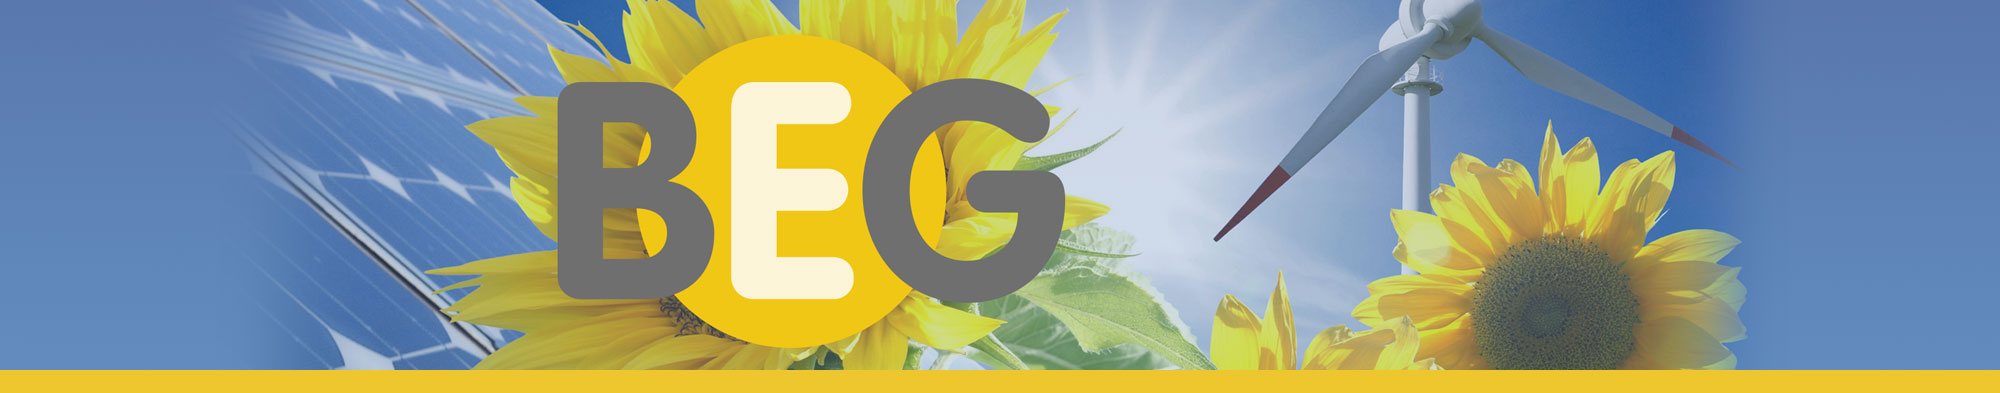 BEG BürgerEnergiegenossenschaft Stuttgart – Solarstrom für Umwelt und Zukunft